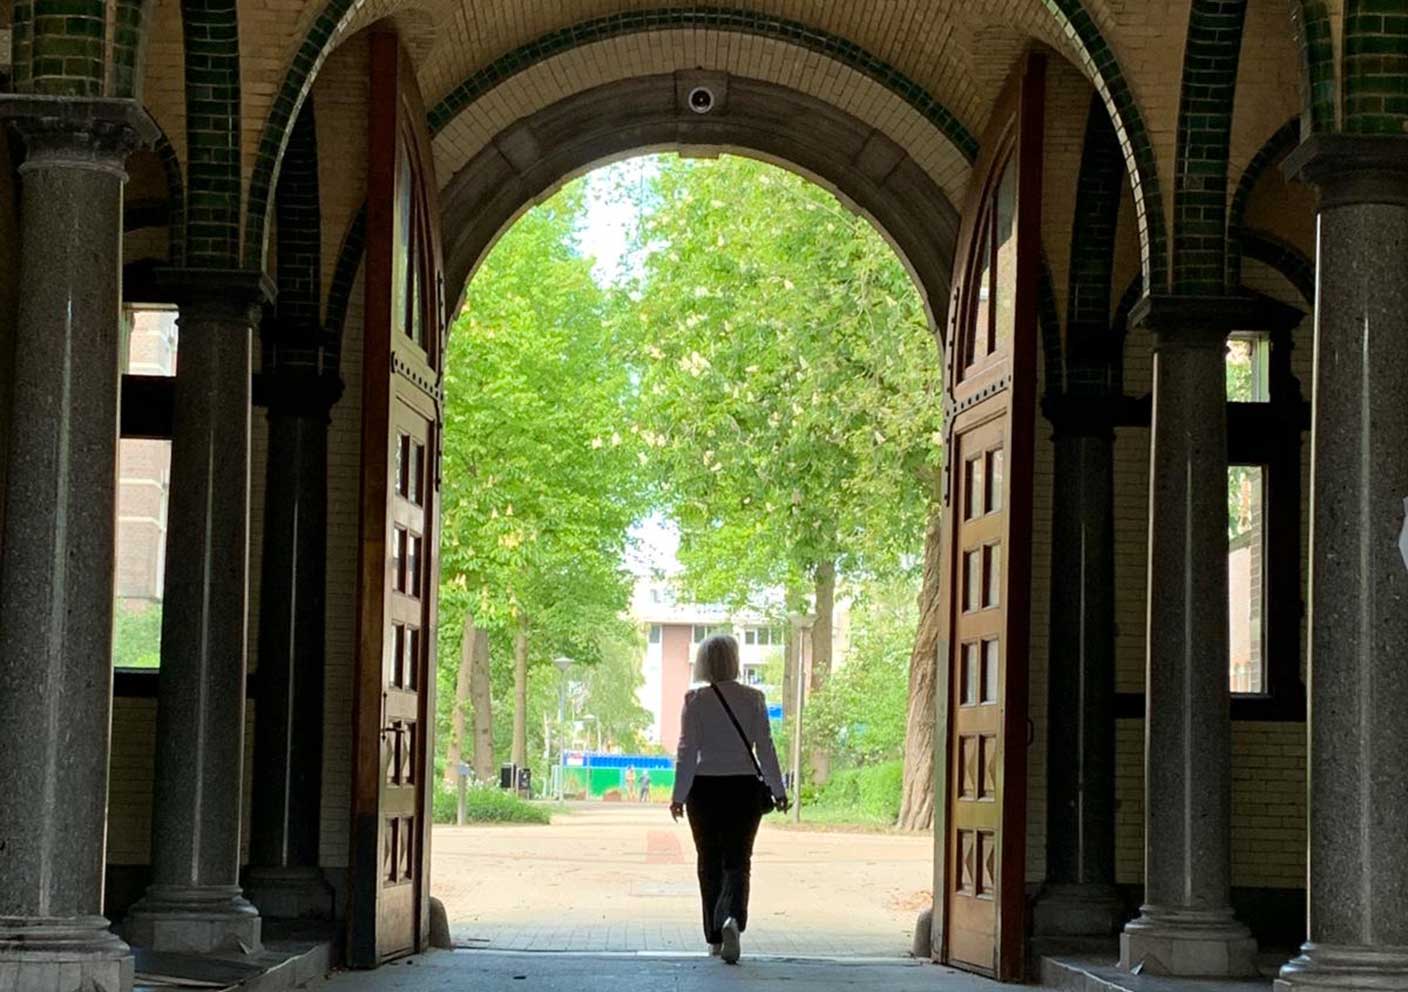 Marjolein walking through a passageway in the former hospital Wilhelmina Gasthuis, Amsterdam